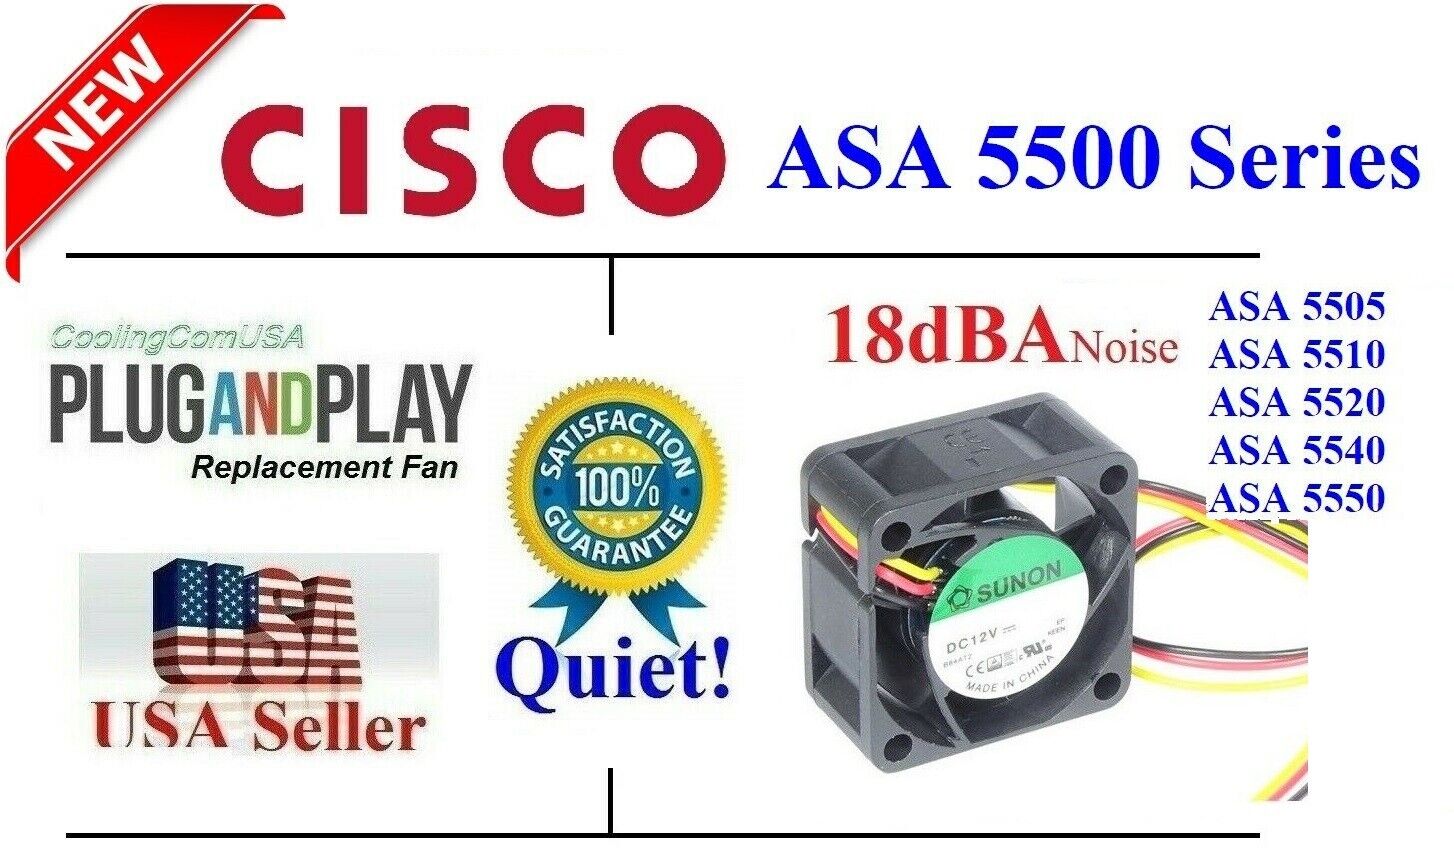 Quiet Cisco fan for Cisco ASA5505 ASA5510 ASA5520 ASA5540 ASA5550 (18dBA Noise)